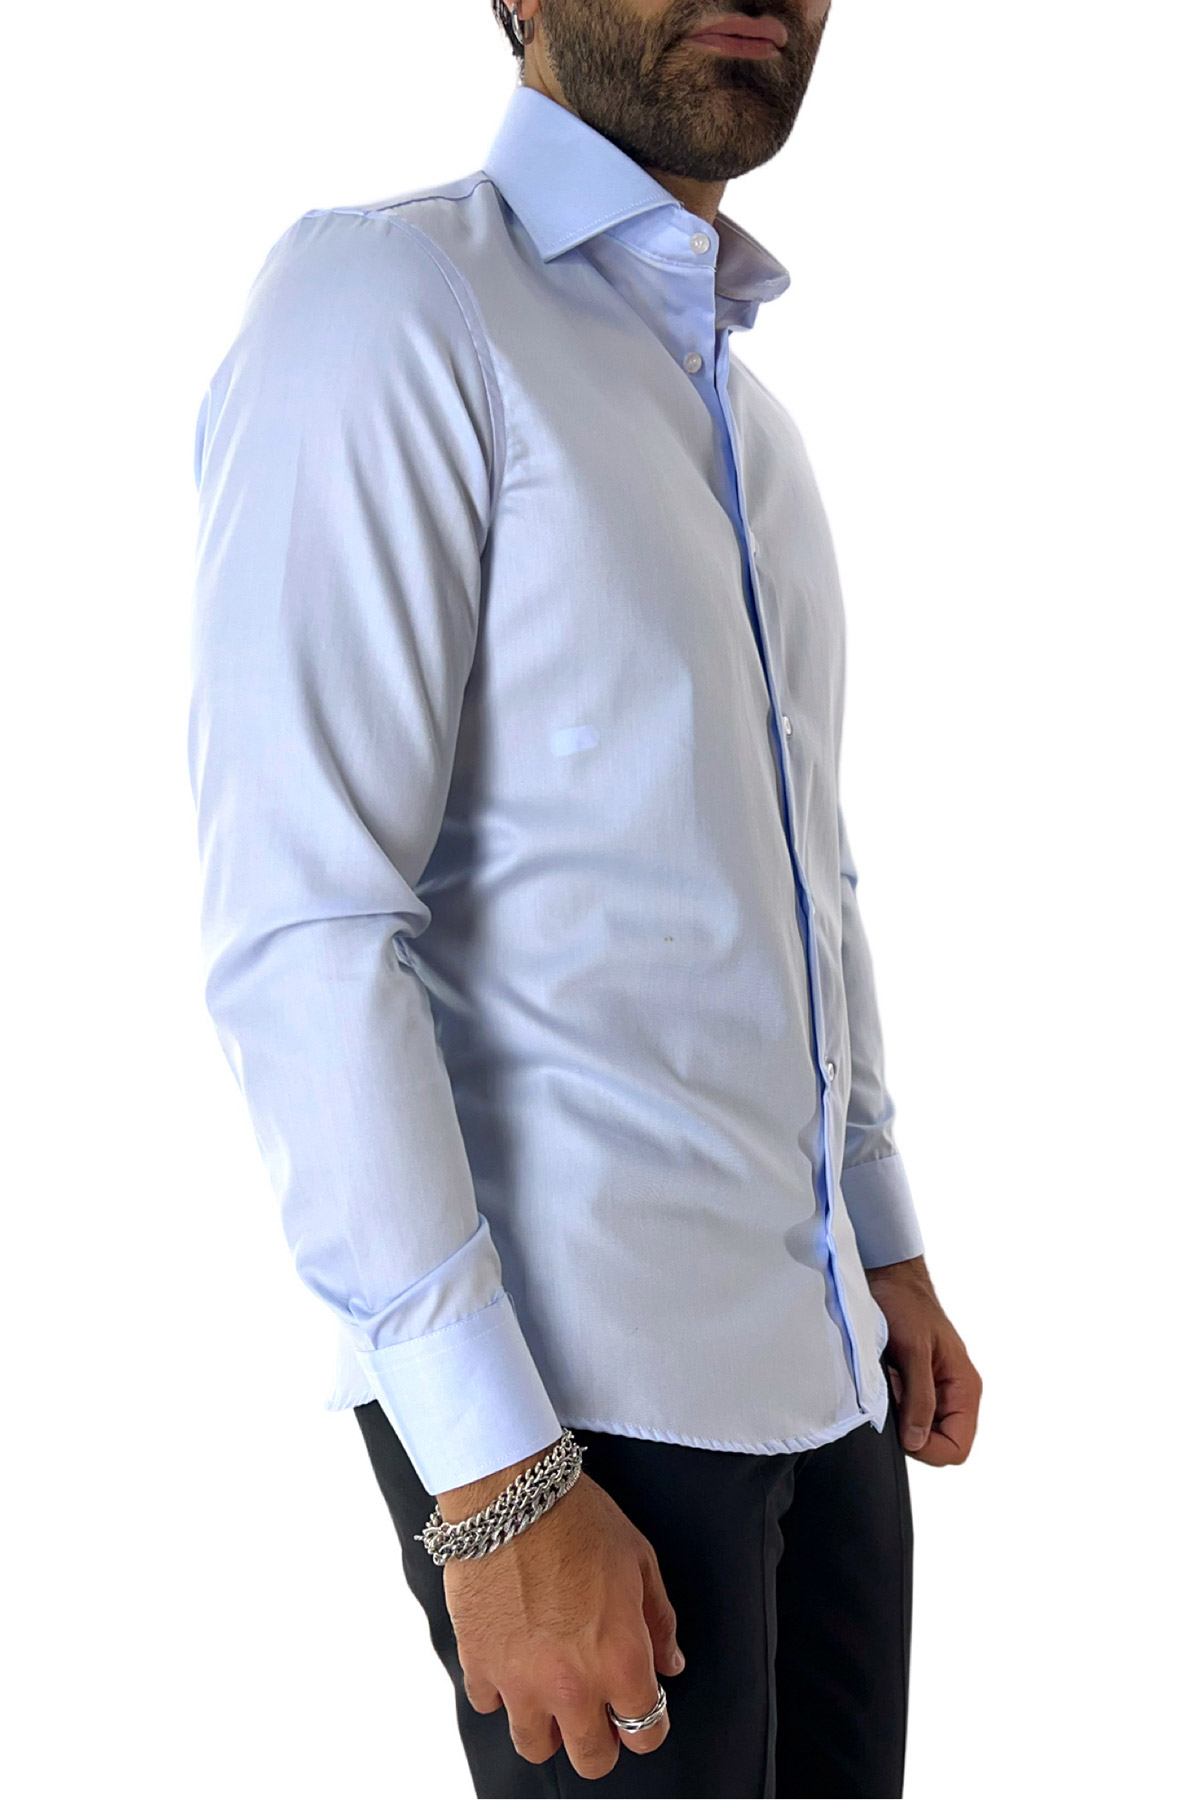 Camicia Uomo Slim fit 100% cotone morbido effetto microriga tono su tono Collo semi francese tinta unita